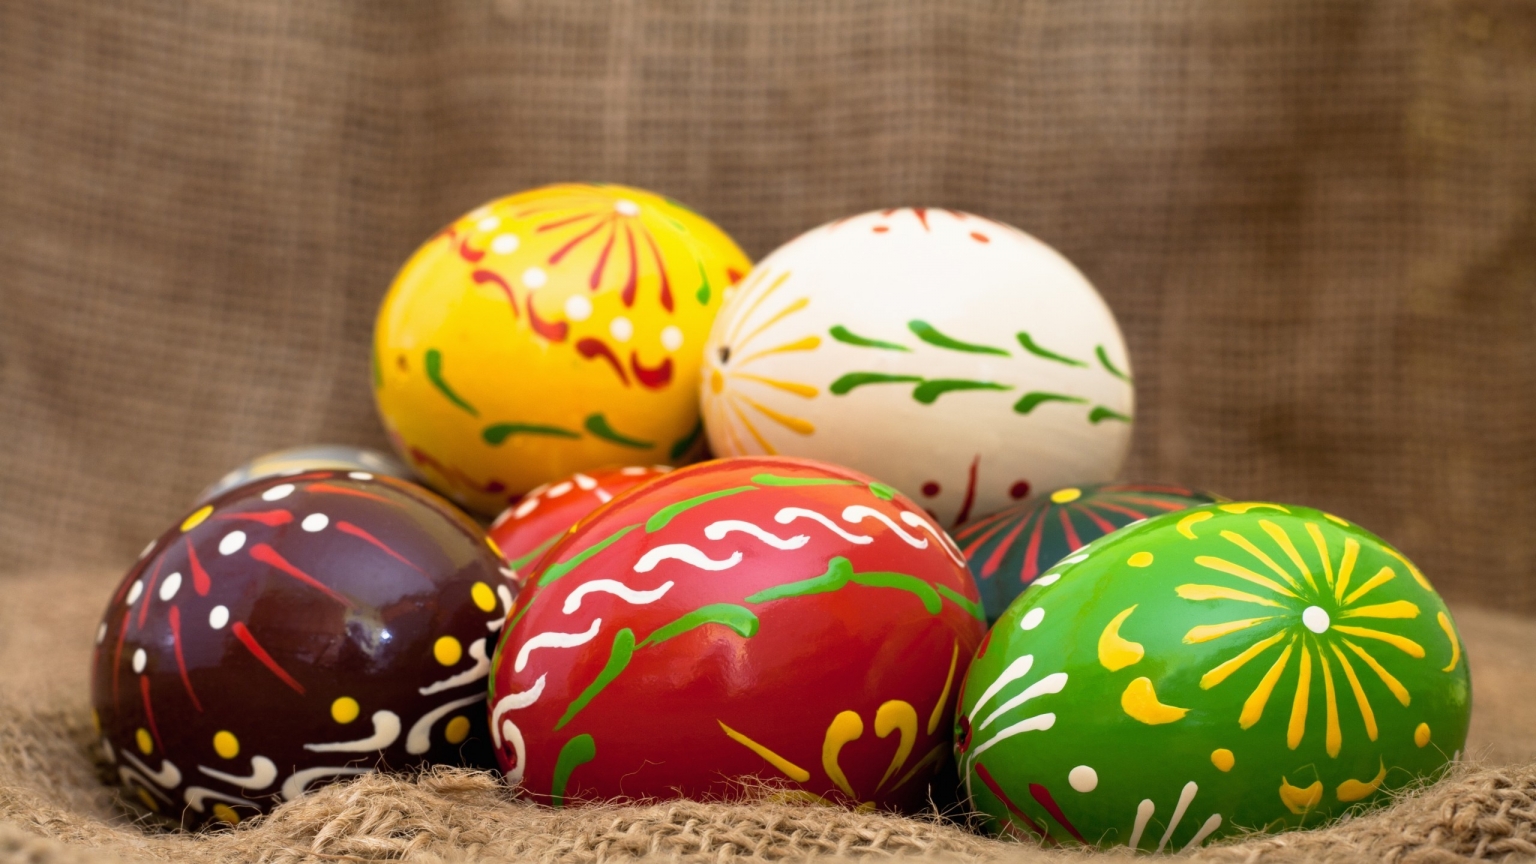 Handmade Easter Eggs for 1536 x 864 HDTV resolution